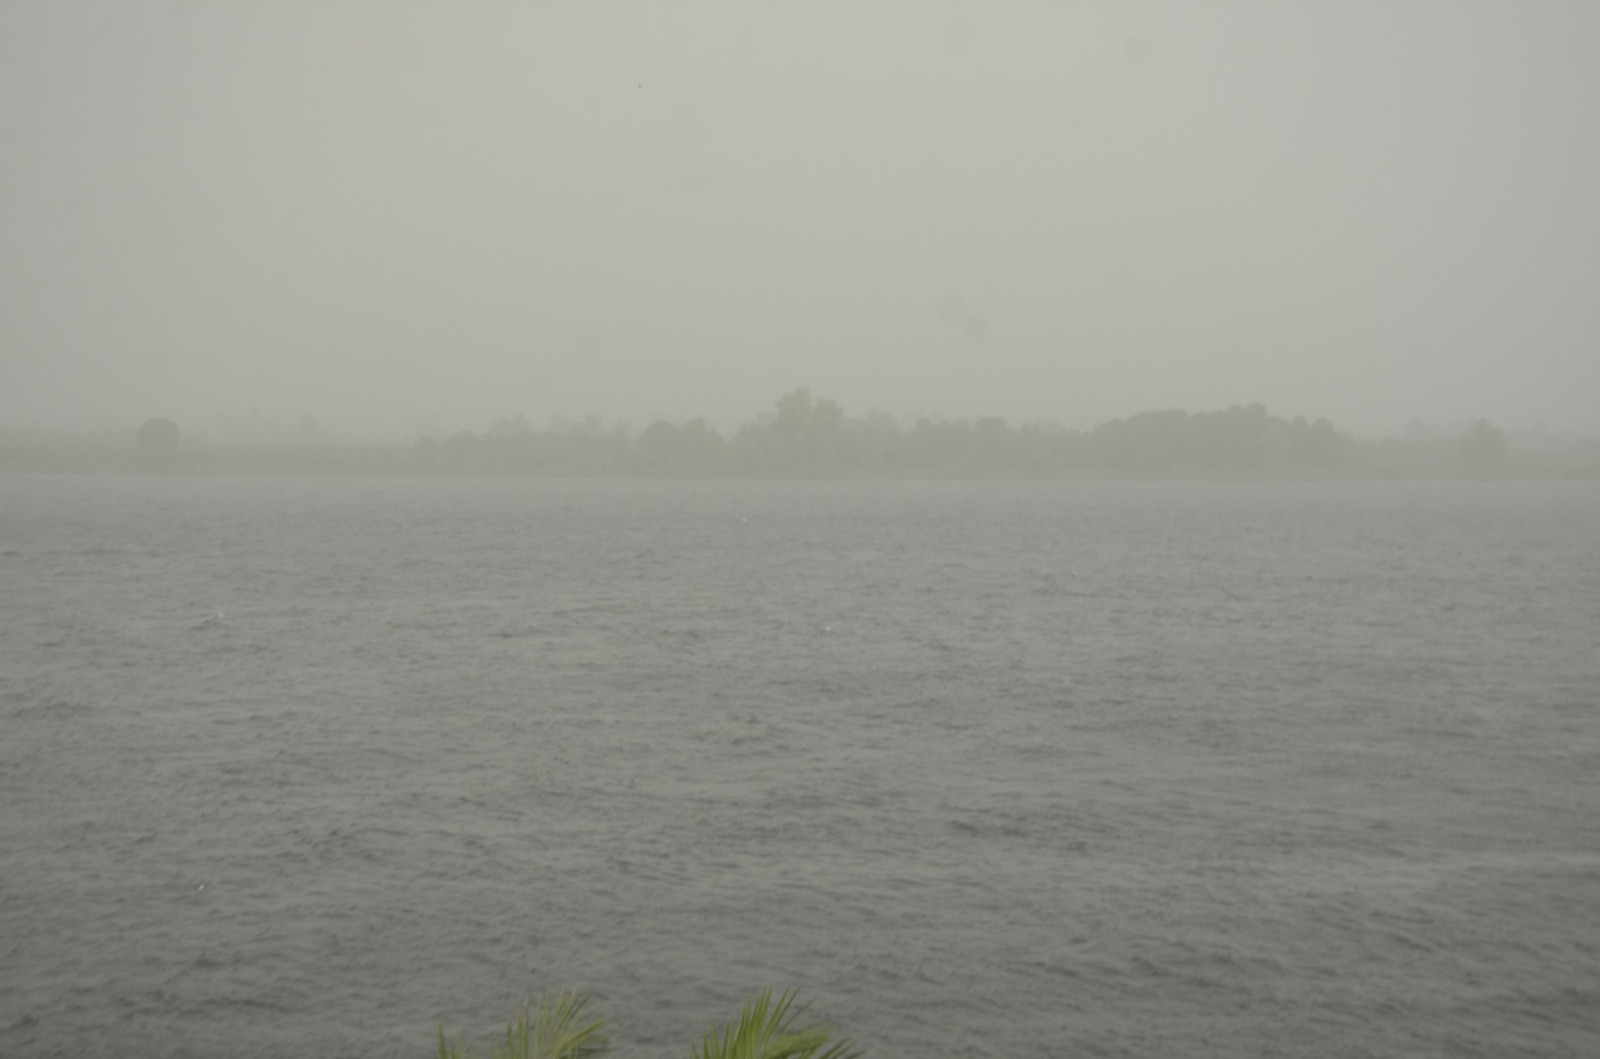 جانب من وقف الملاحة النهرية فى قناطر وهويس إسنا بعد العاصفة الترابية